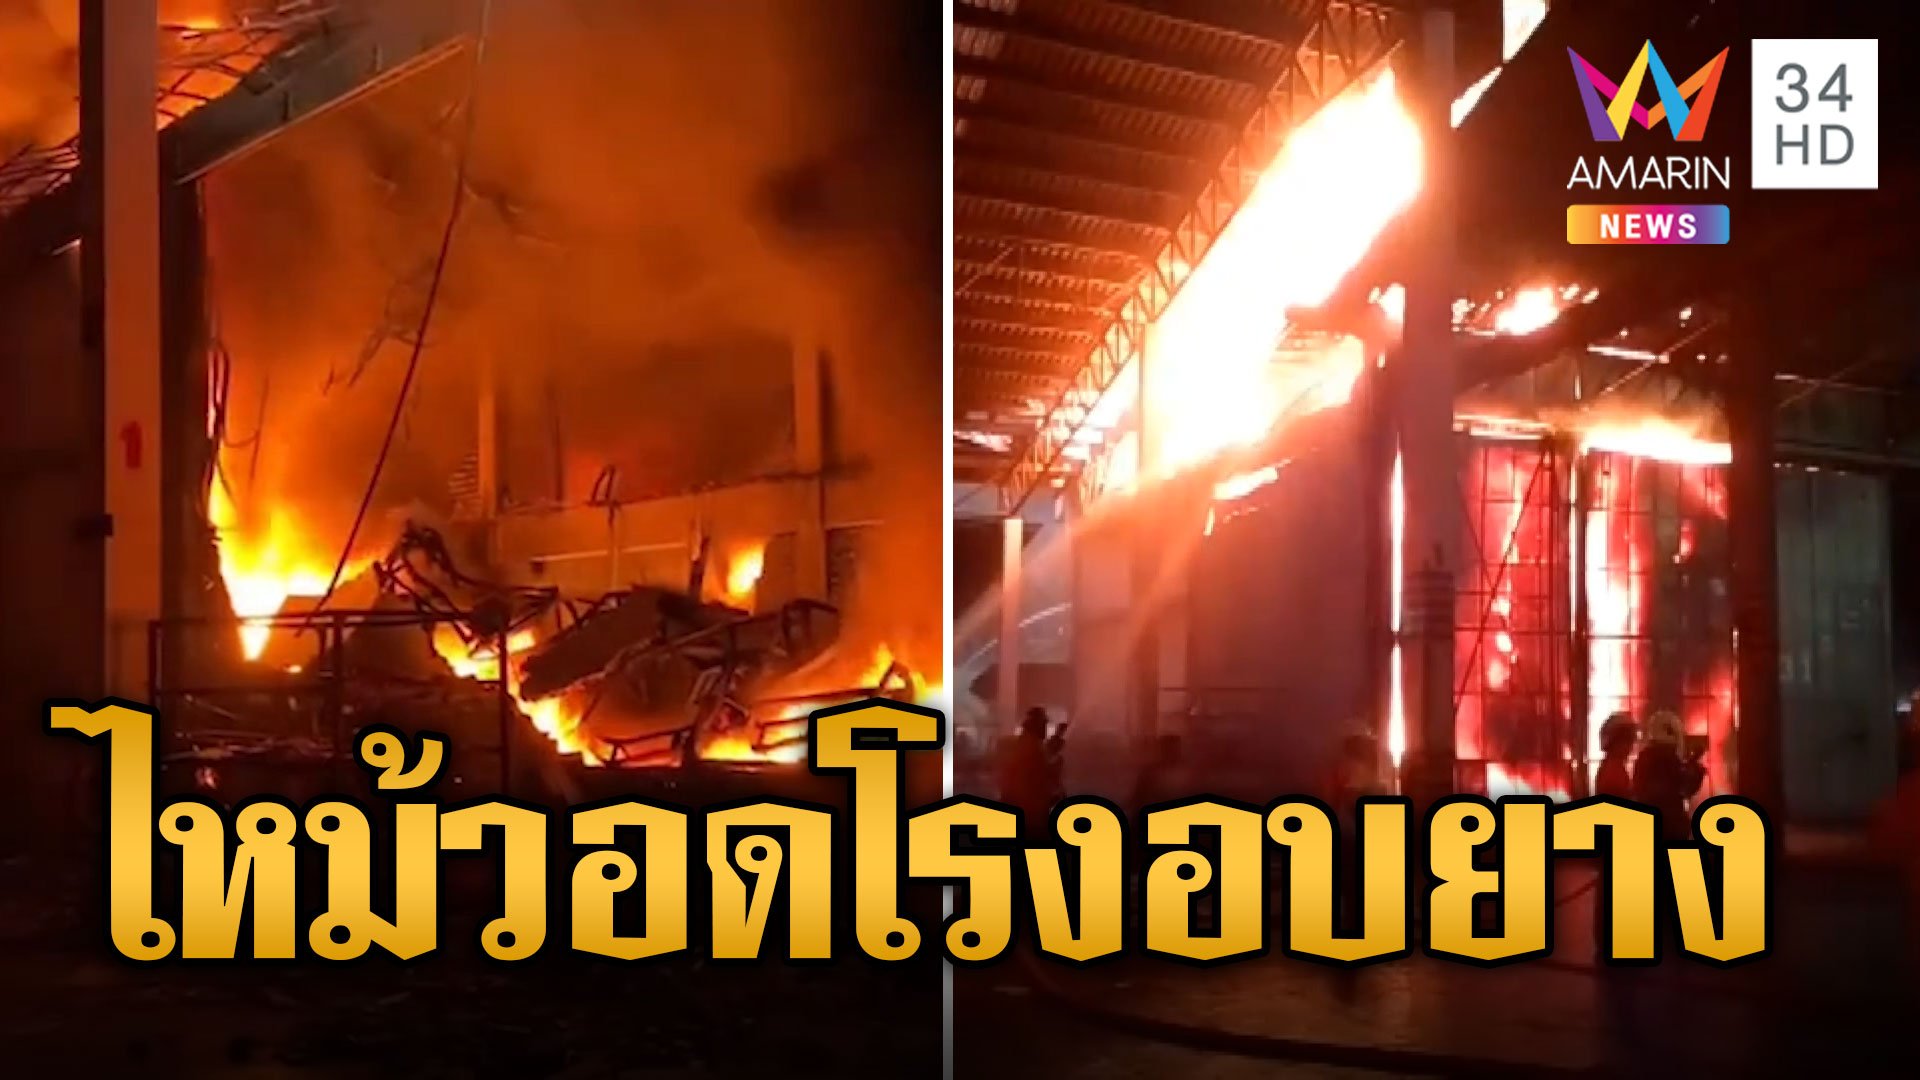 ร้อนจนไฟลุก เพลิงโหมโรงงานยางพาราทุ่งสงวอด | ข่าวอรุณอมรินทร์ | 6 พ.ค. 67 | AMARIN TVHD34